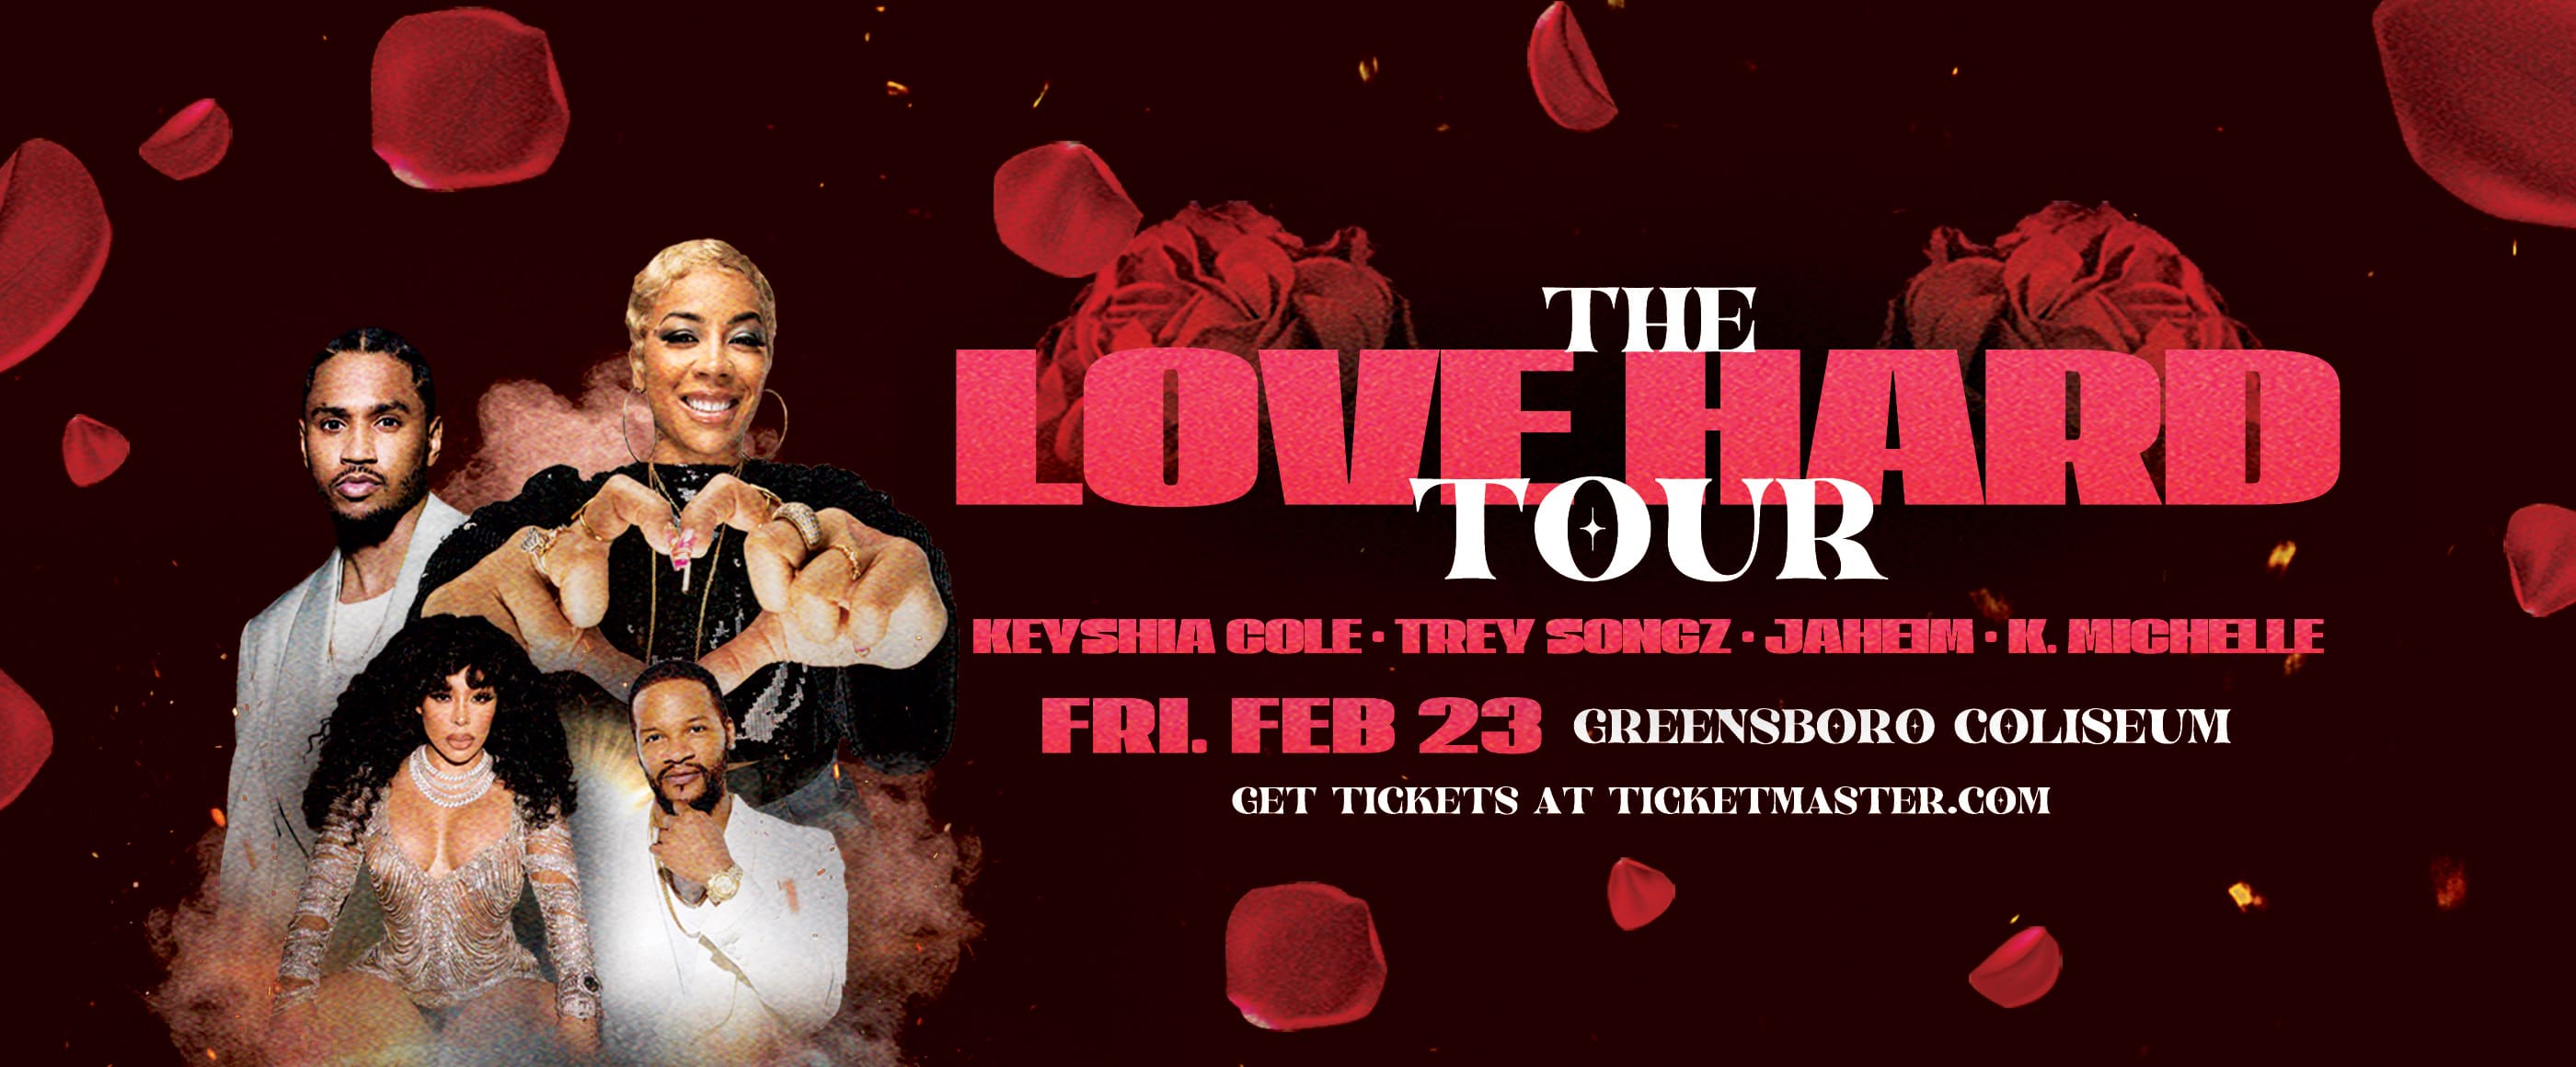 The Love Hard Tour  Greensboro Coliseum Complex